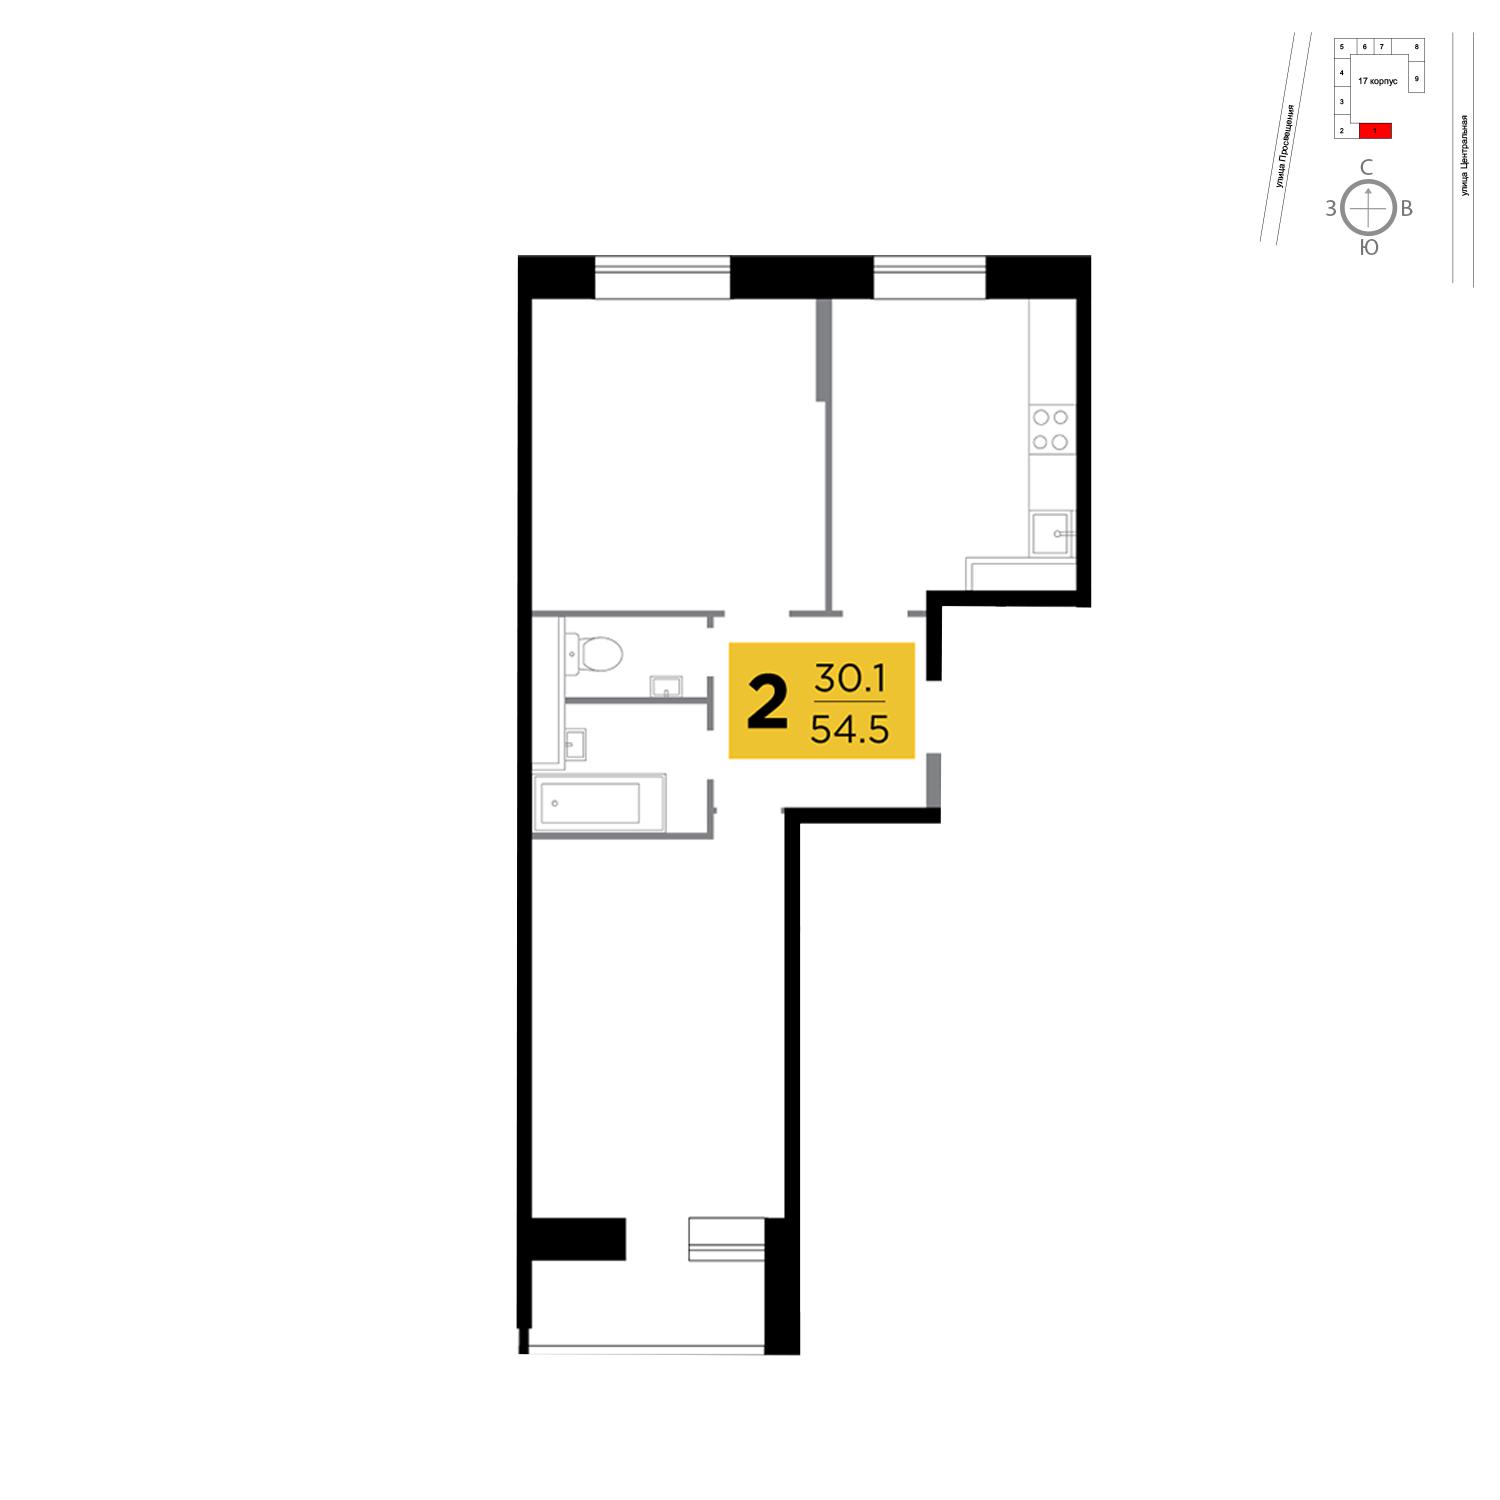 Продаётся 2-комнатная квартира в новостройке 54.5 кв.м. этаж 2/16 за 4 398 967 руб 